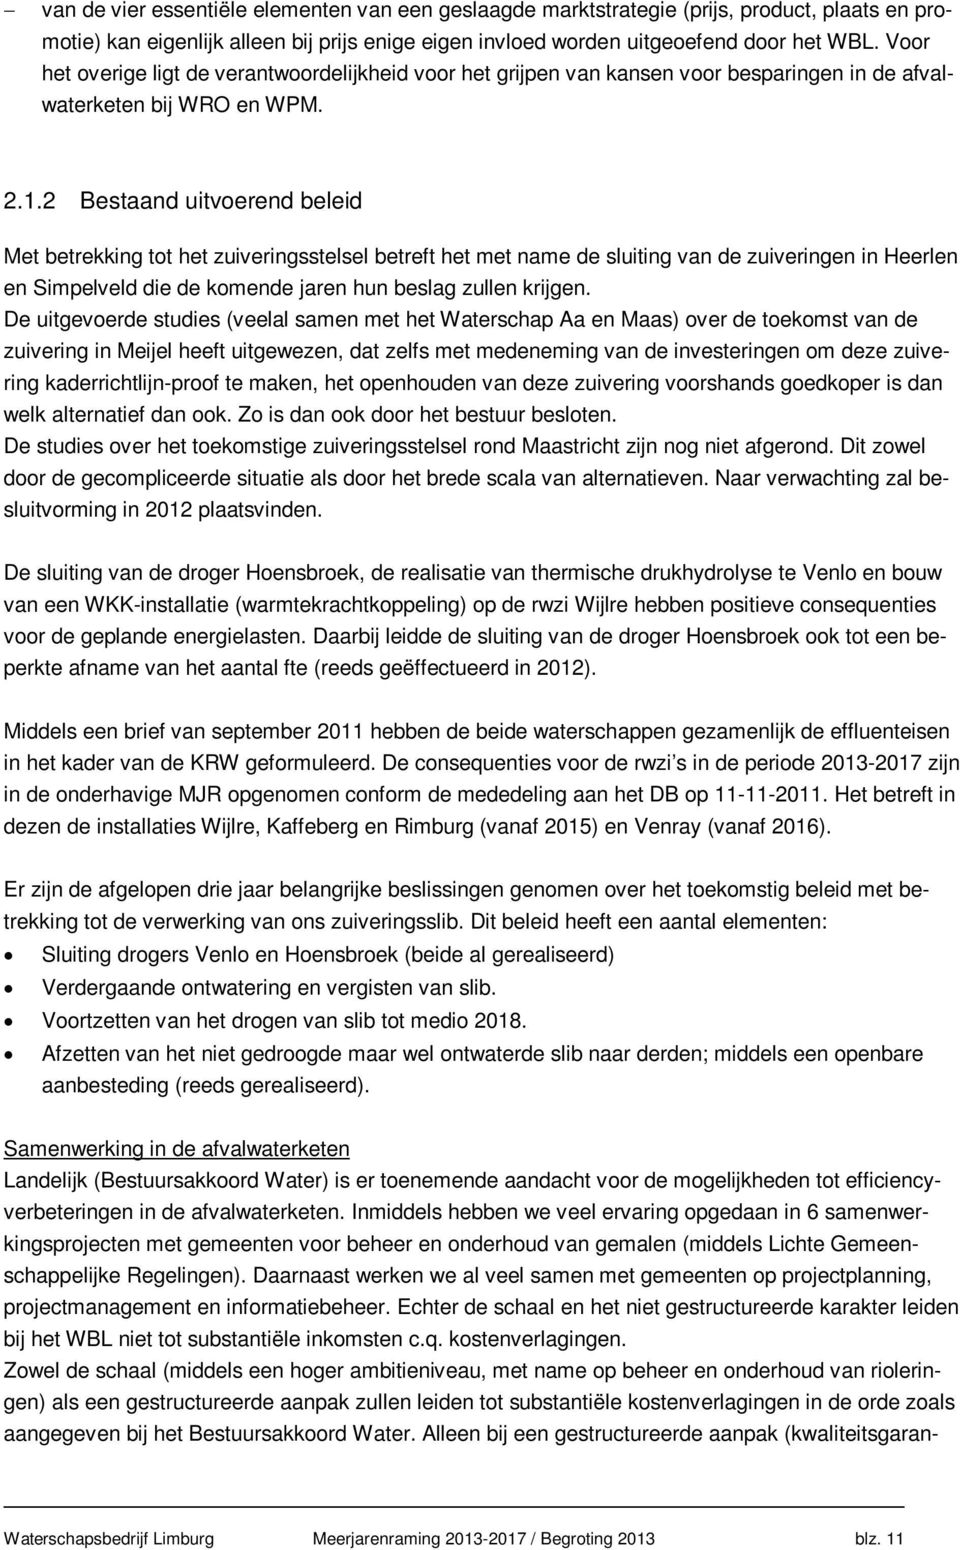 2 Bestaand uitvoerend beleid Met betrekking tot het zuiveringsstelsel betreft het met name de sluiting van de zuiveringen in Heerlen en Simpelveld die de komende jaren hun beslag zullen krijgen.